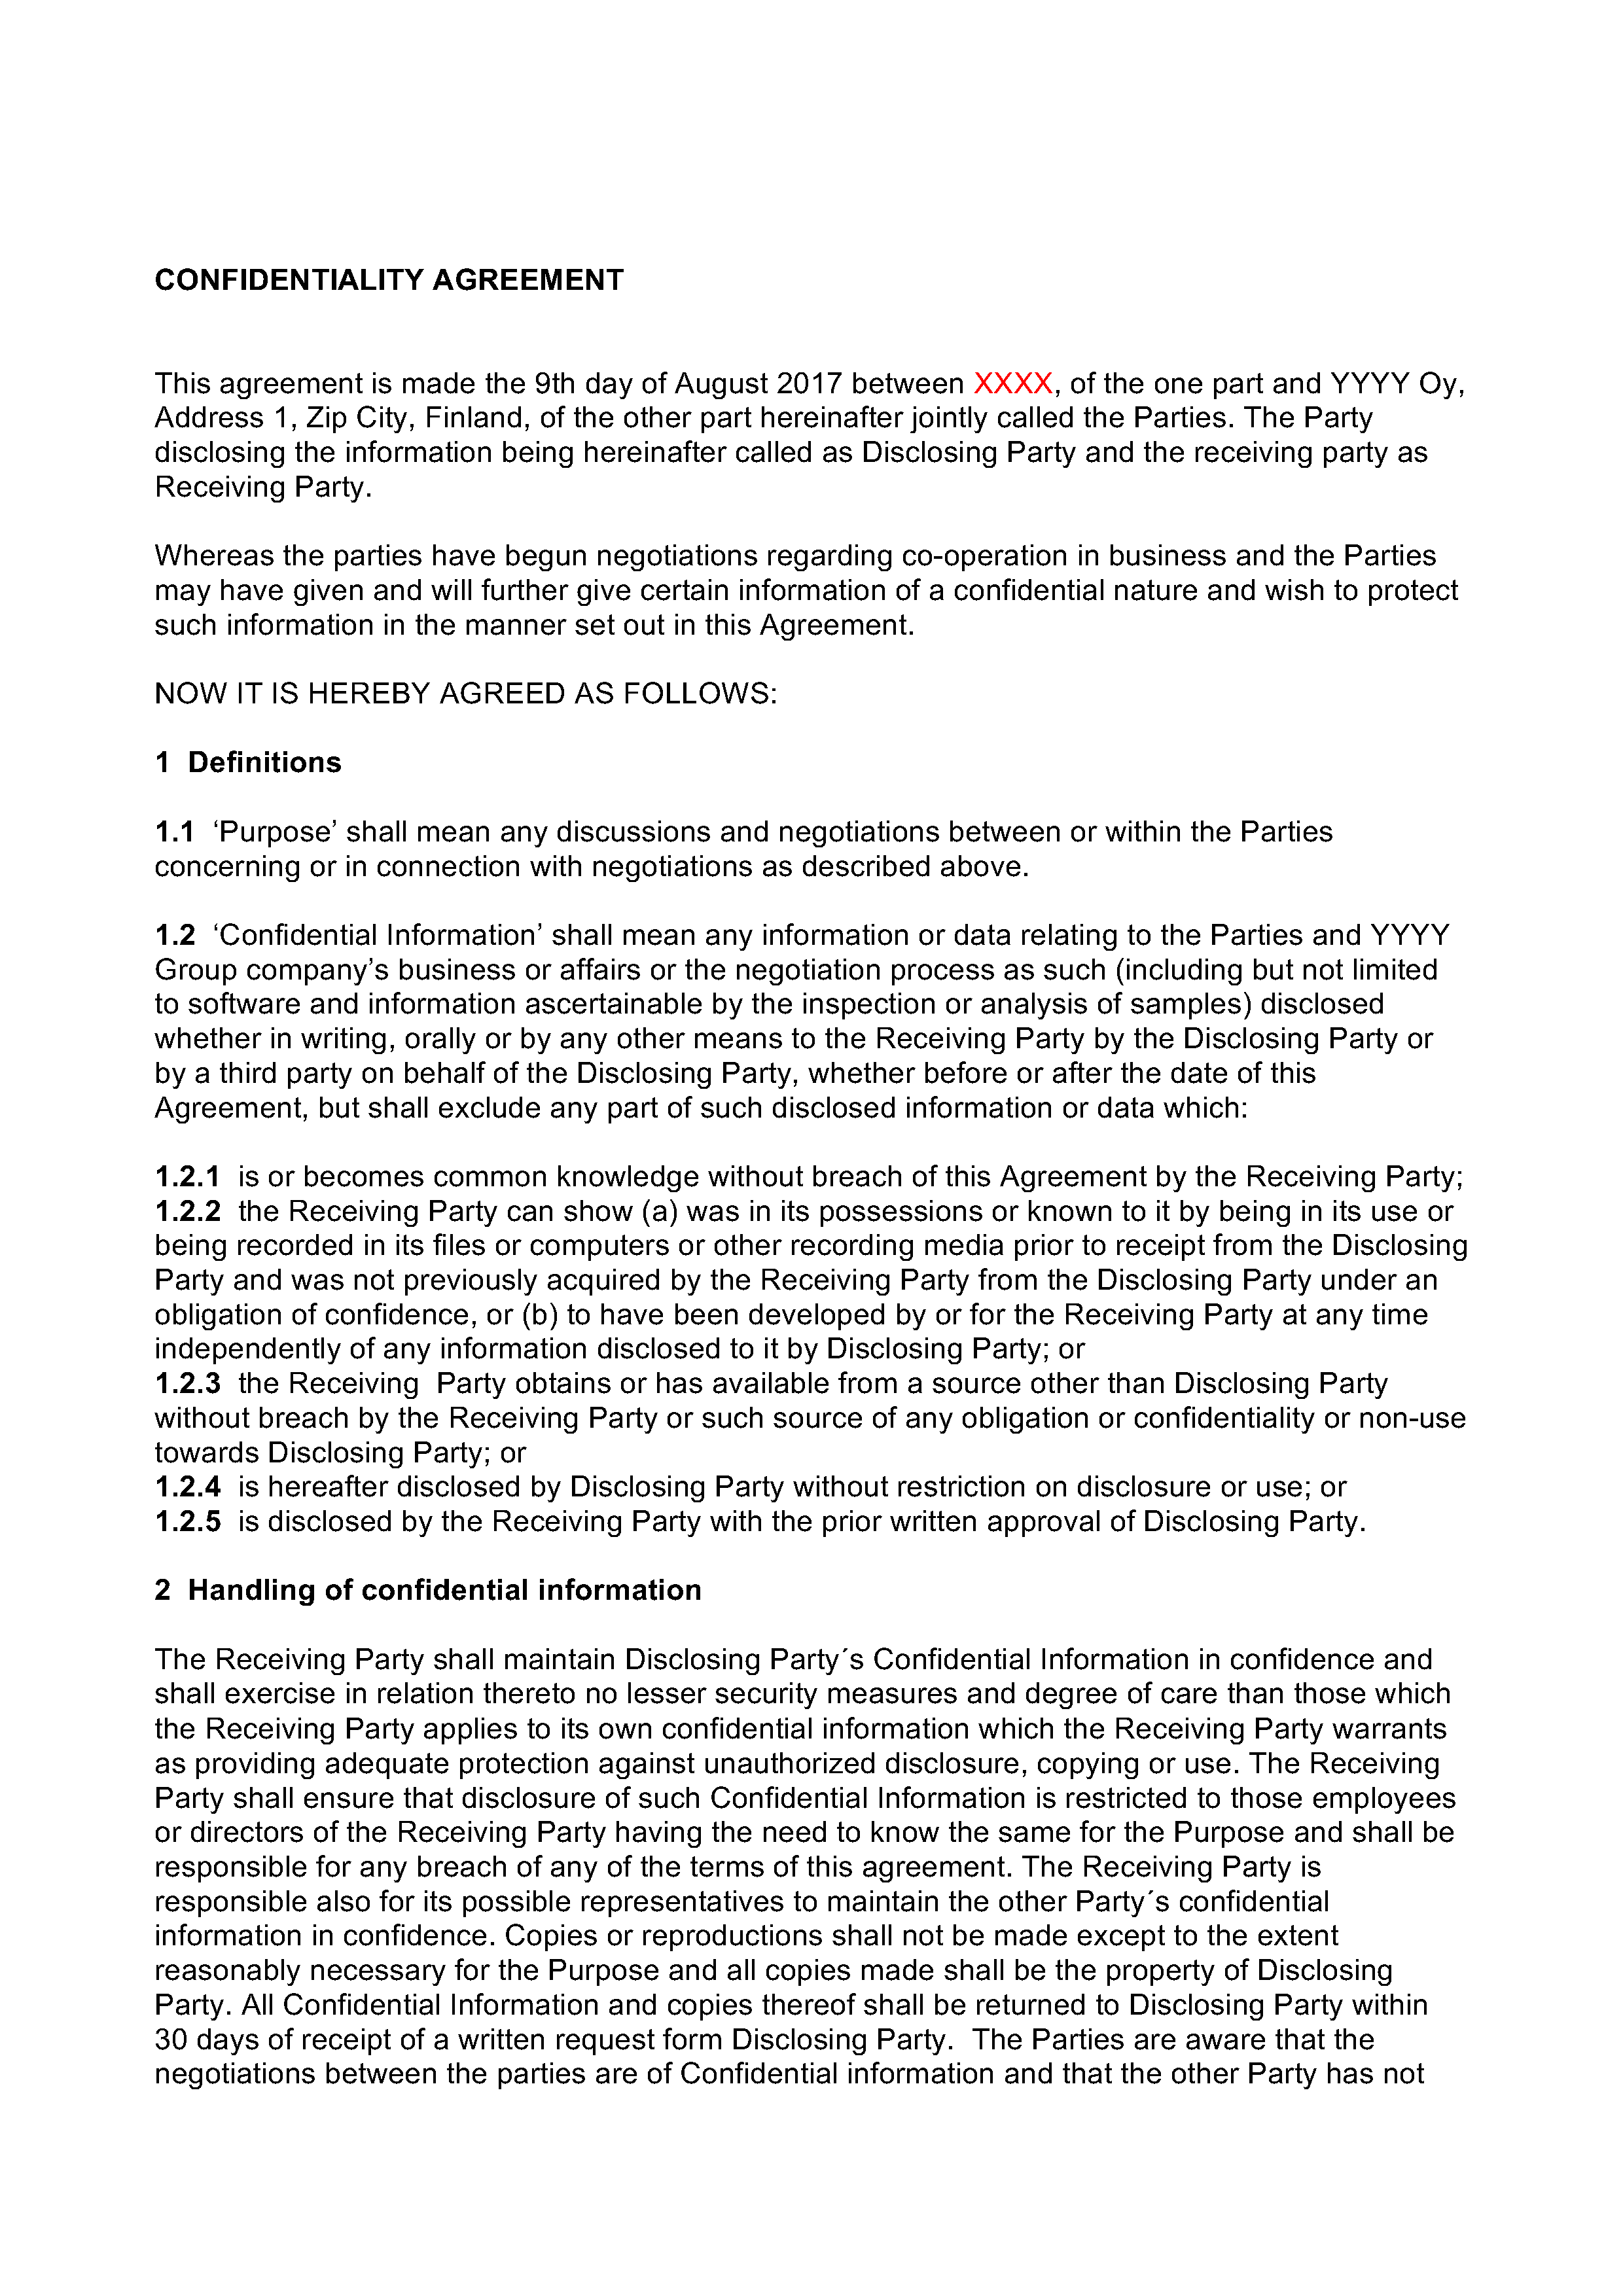 Alkuperäinen salassapitosopimus, sivu 1. Klikkaa kuva täysikokoiseksi.